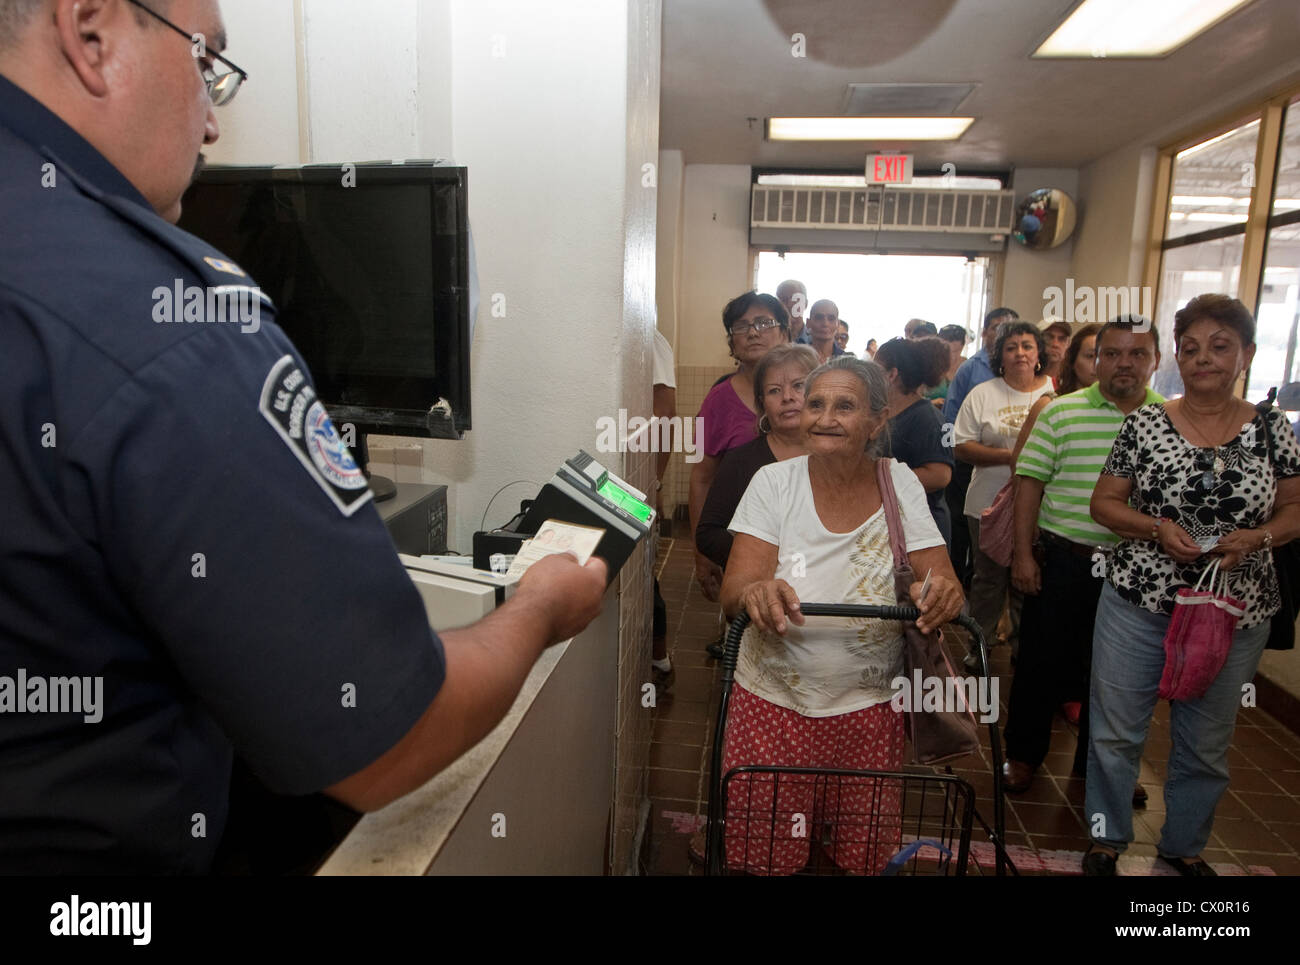 L'US Customs and Border Protection Agency assister à demander la documentation et le statut d'immigration à des gens venus dans l'US Banque D'Images